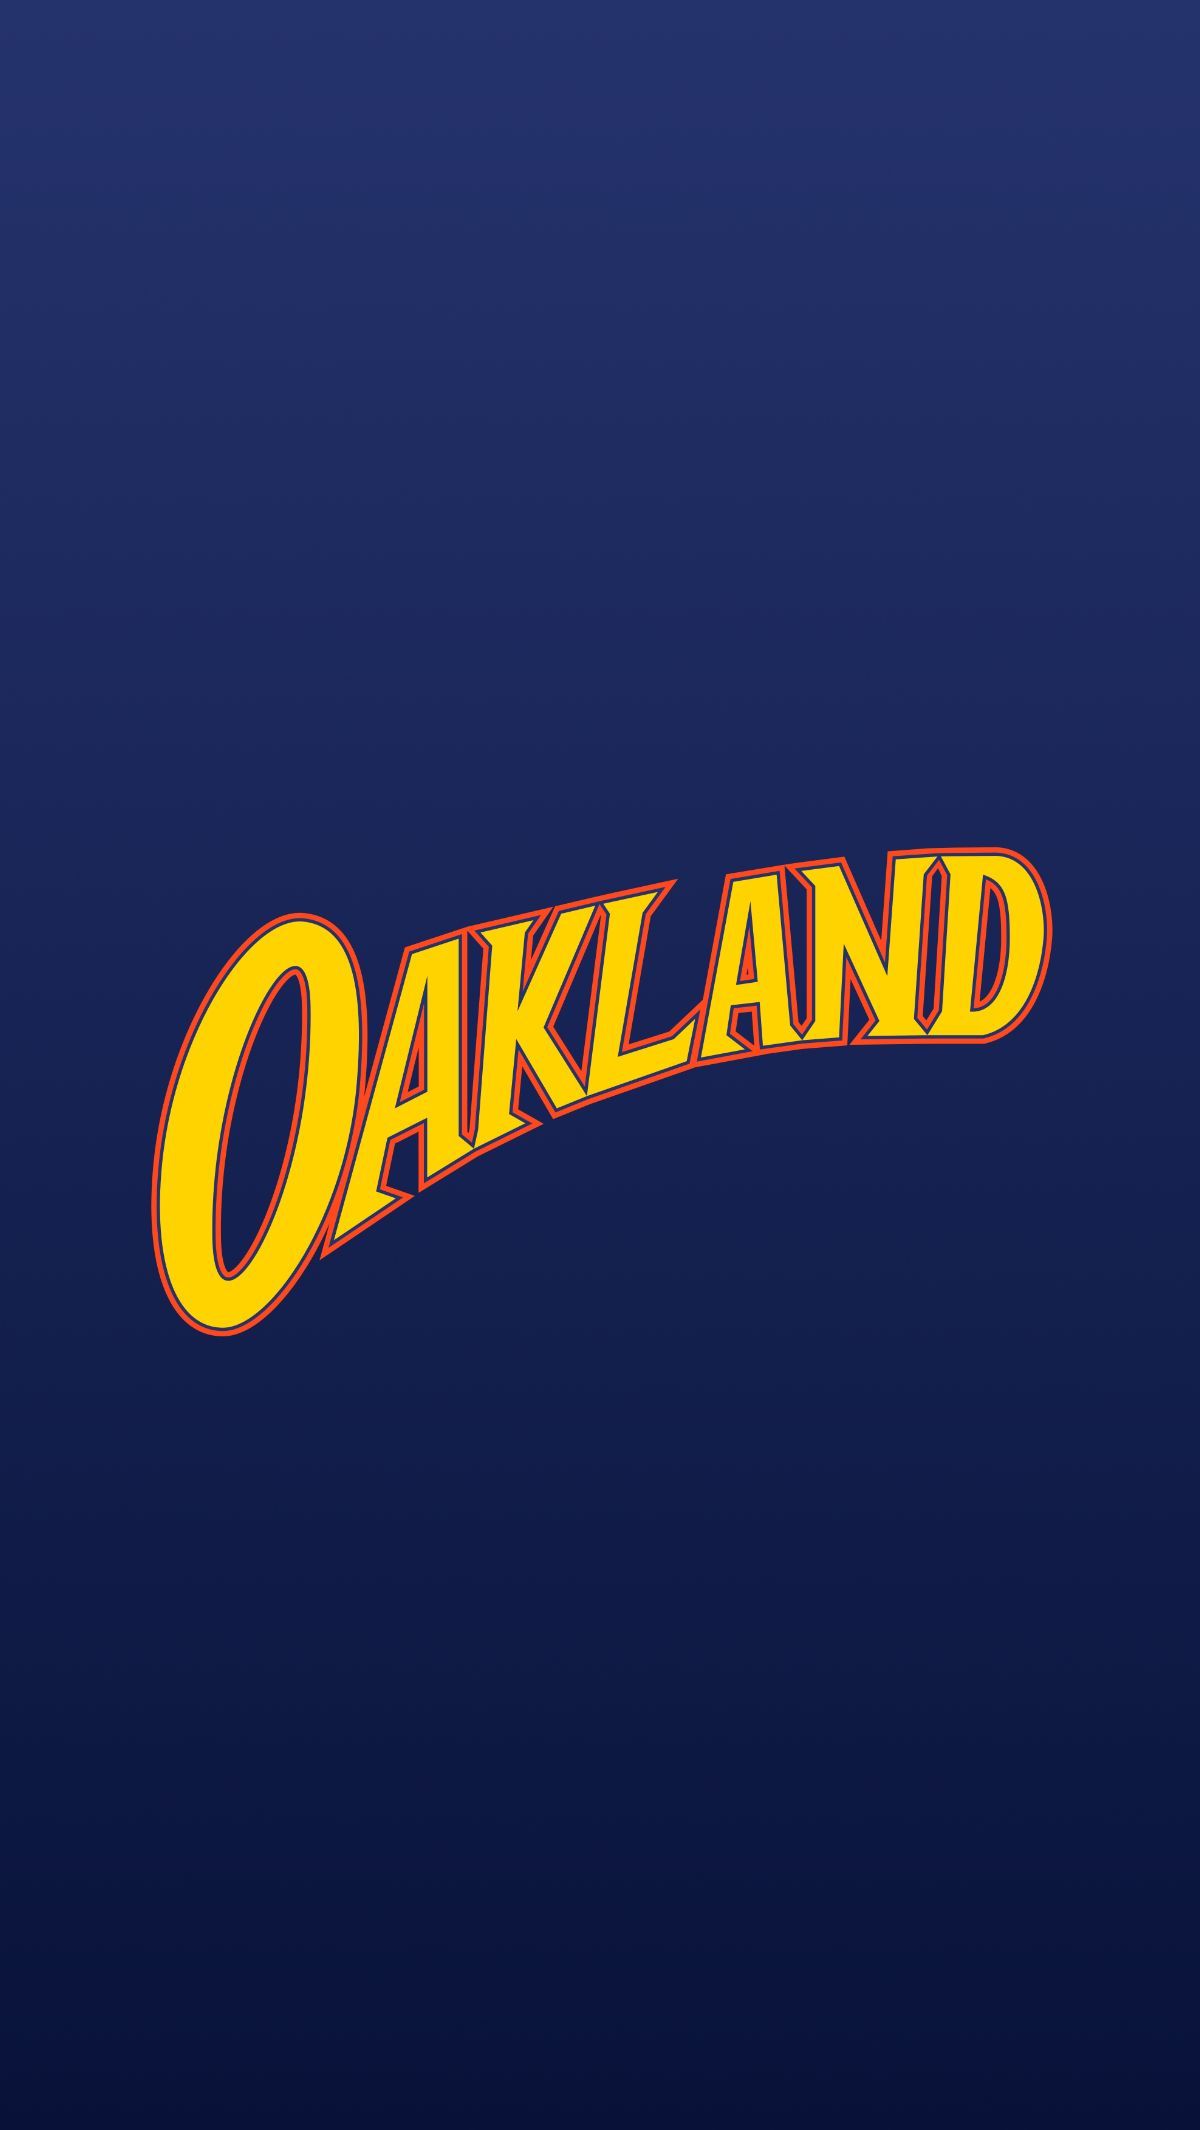 Oakland Warriors State Basketball Sticker by sportsign. Golden state warriors wallpaper, Golden state basketball, Warriors basketball logo